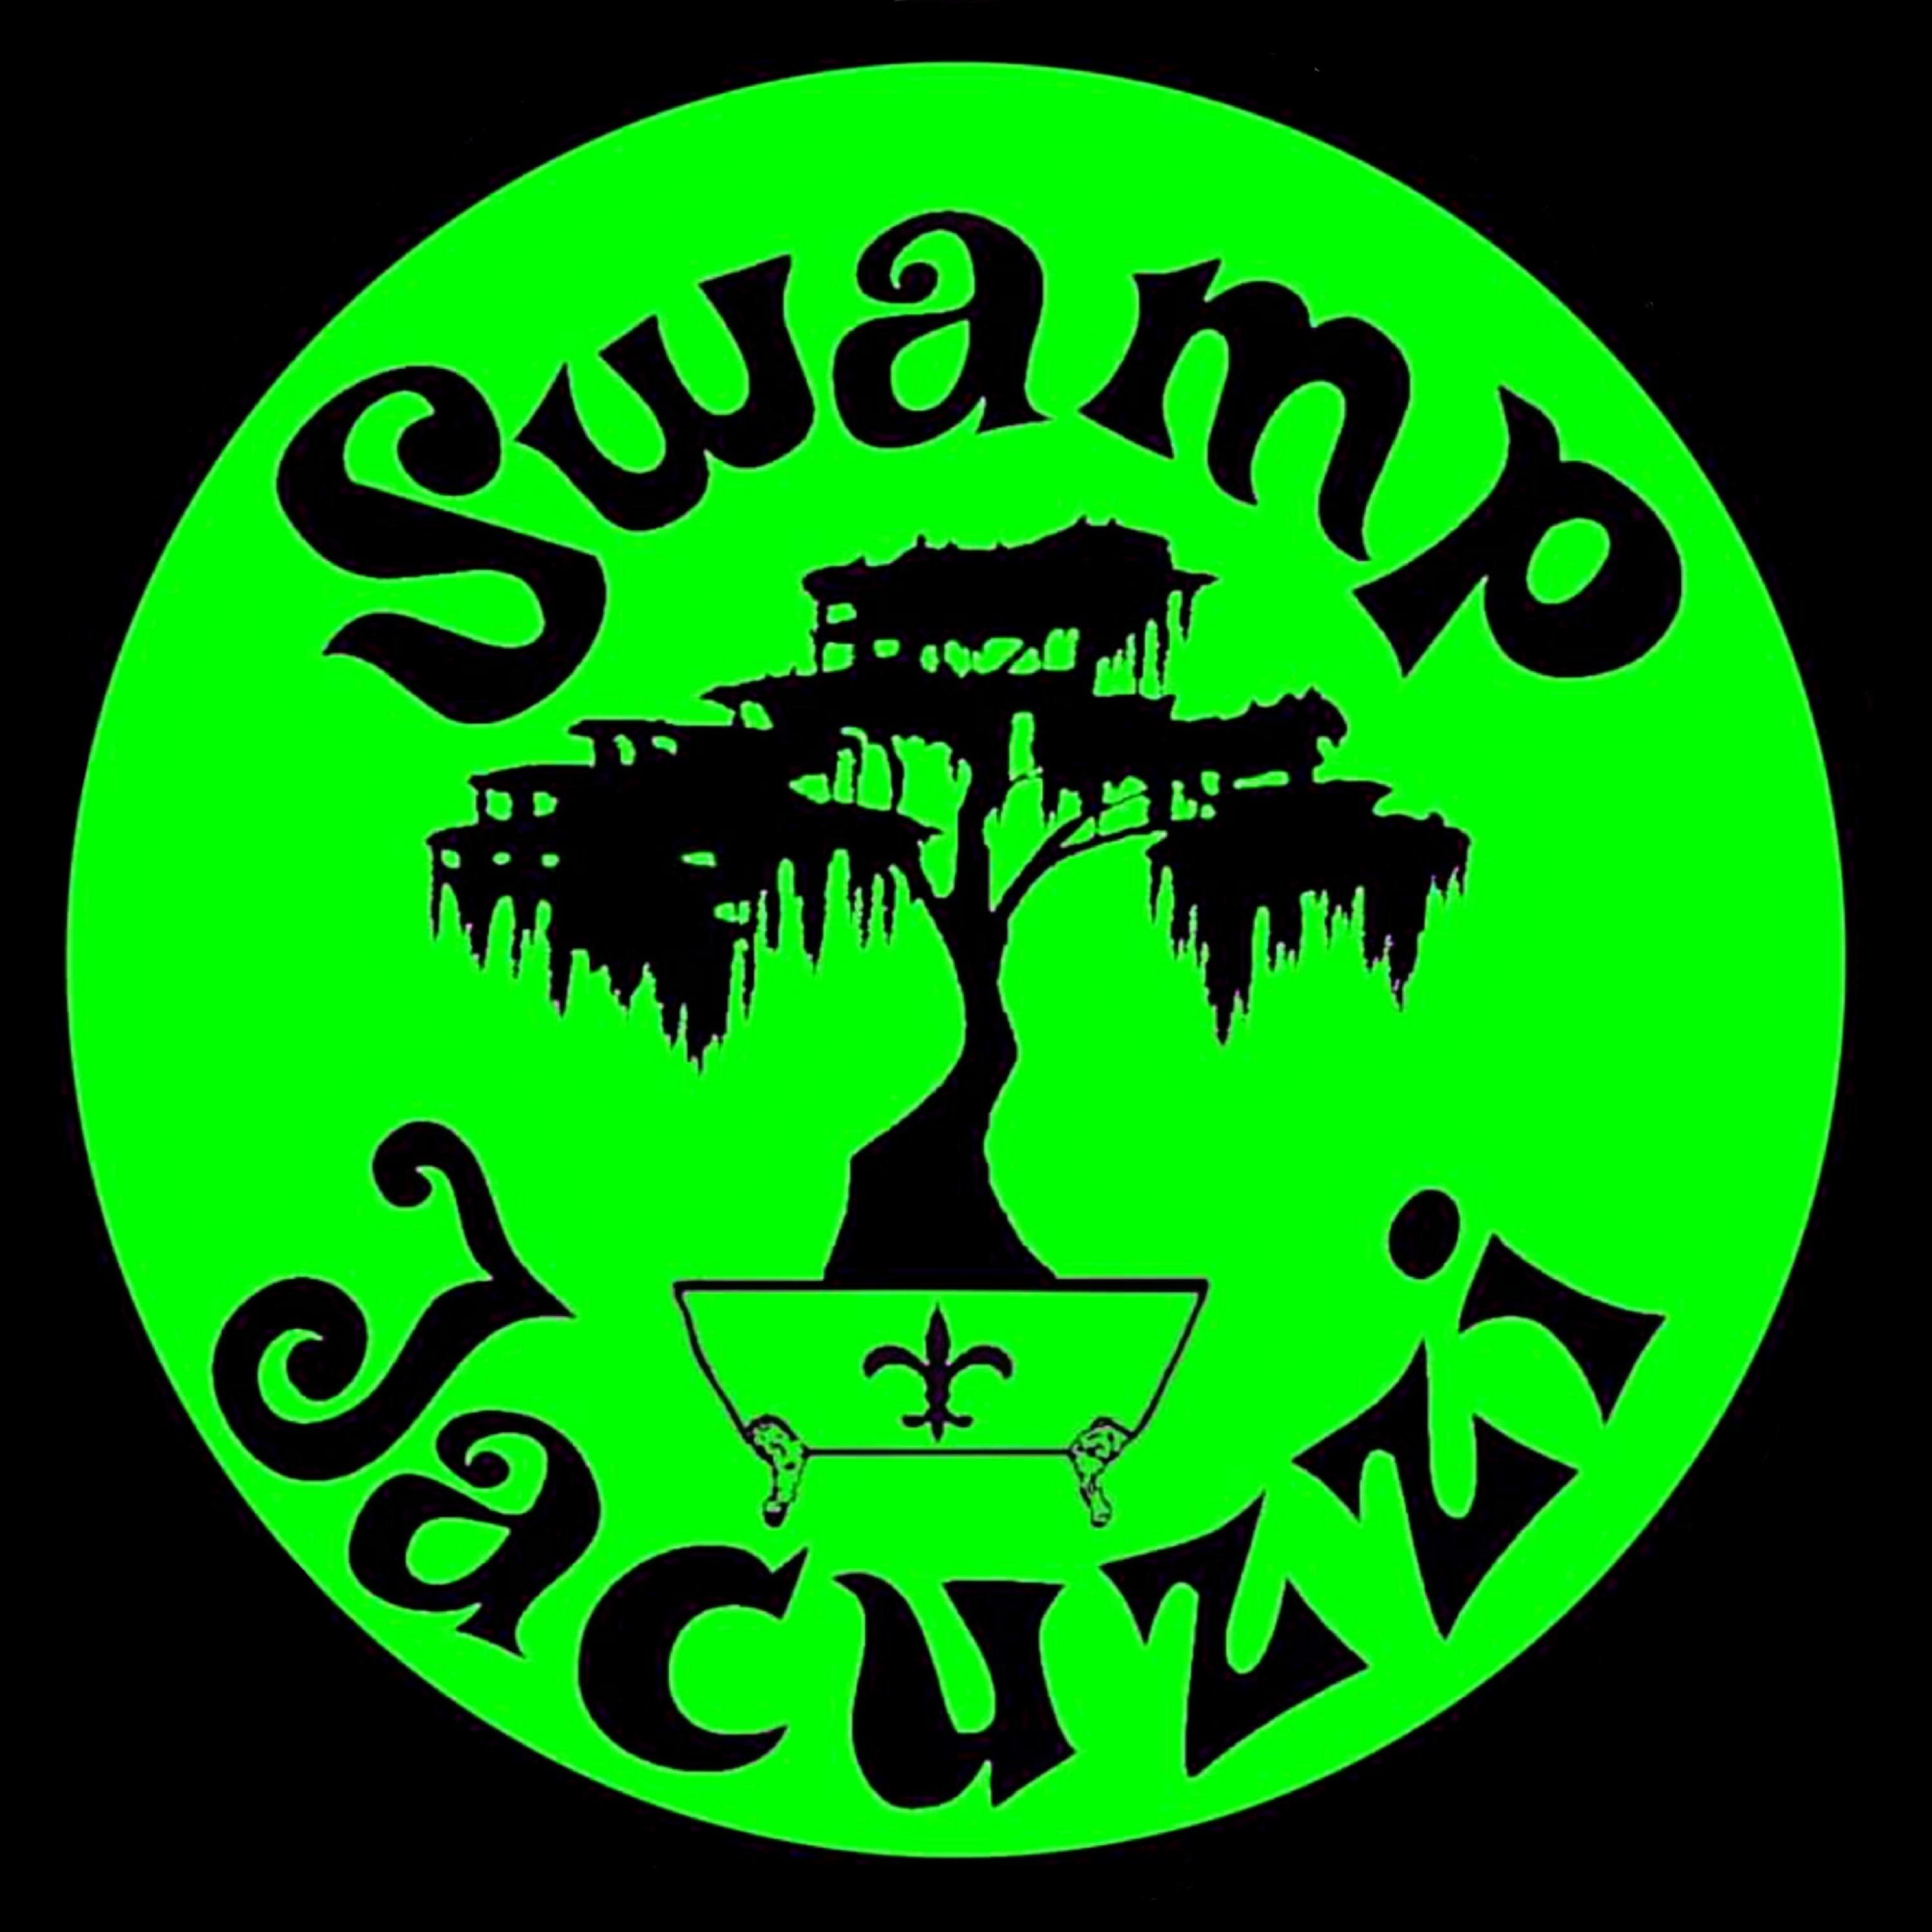 Swamp Jacuzzi